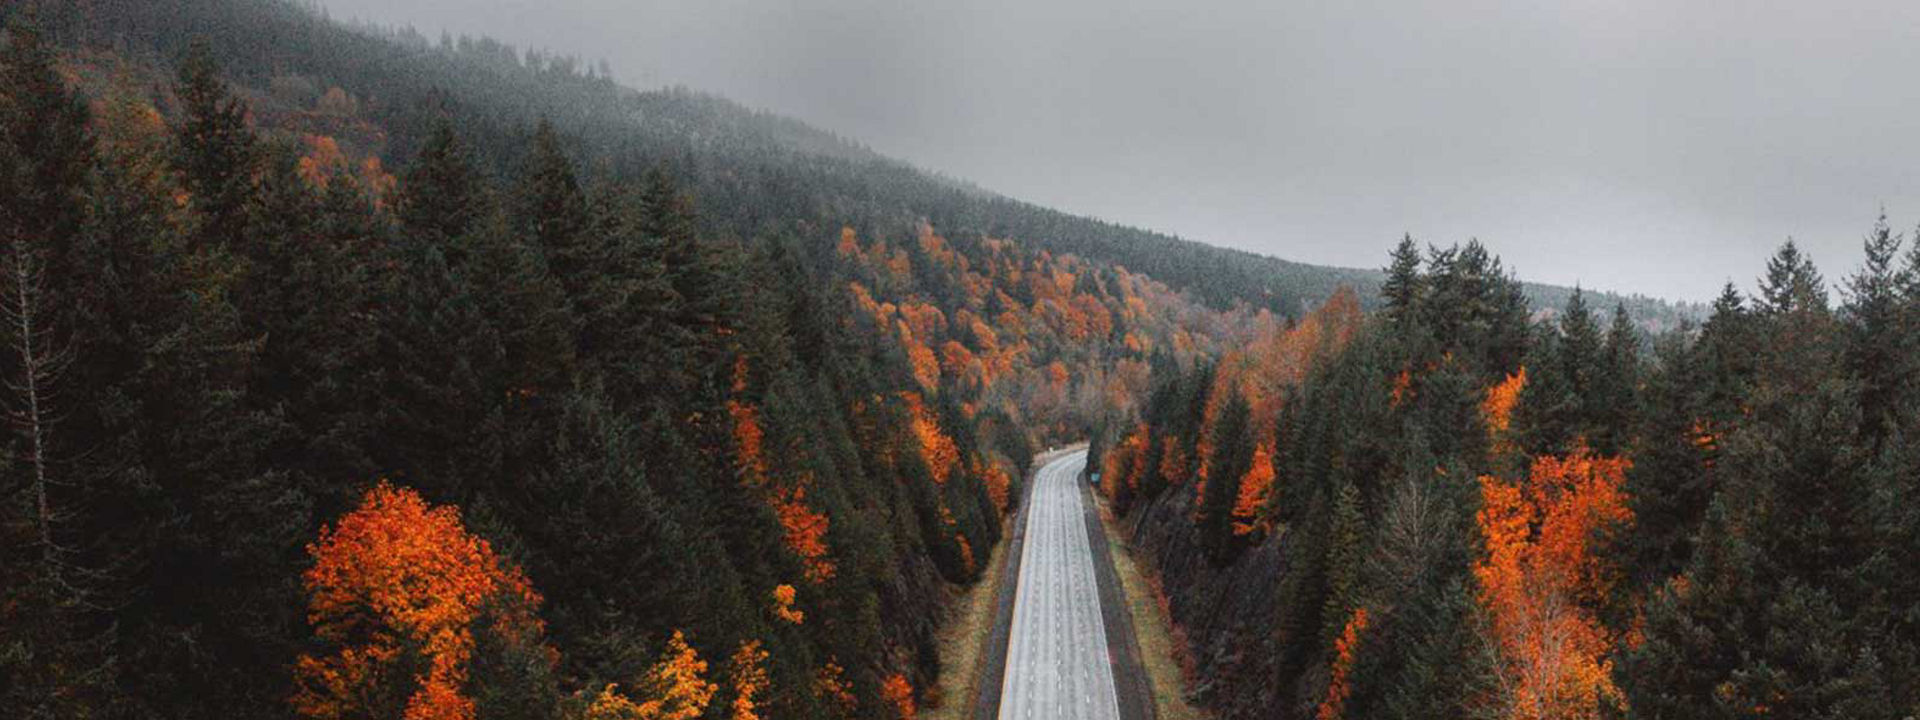 Η εικόνα παρουσιάζει έναν άδειο αυτοκινητόδρομο που διασχίζει ένα δάσος το φθινόπωρο, υποδεικνύοντας ότι τα ελαστικά Weather Control είναι κατάλληλα για όλες τις εποχές